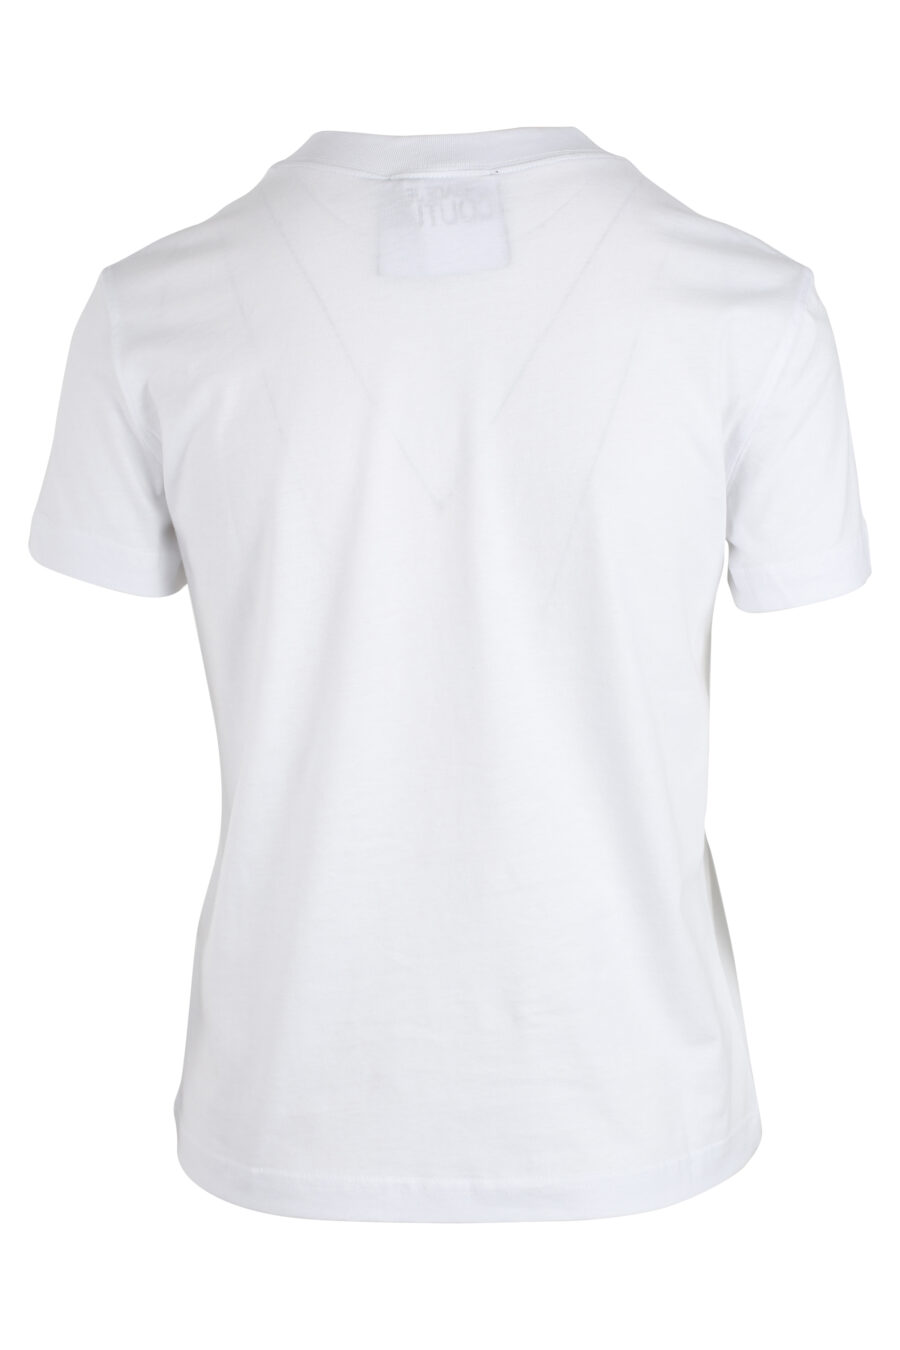 Camiseta blanca con logo dorado en el centro - IMG 4863